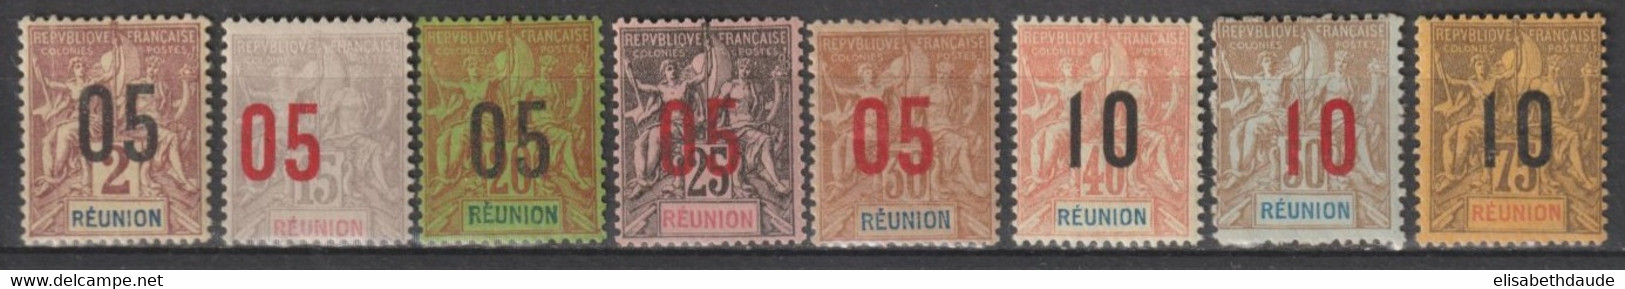 REUNION - 1912 - SERIE COMPLETE - YVERT N° 72/79 * MH (BELLE VARIETE DENTELURE DU 78 !) - COTE = 30+ EUR. - - Neufs